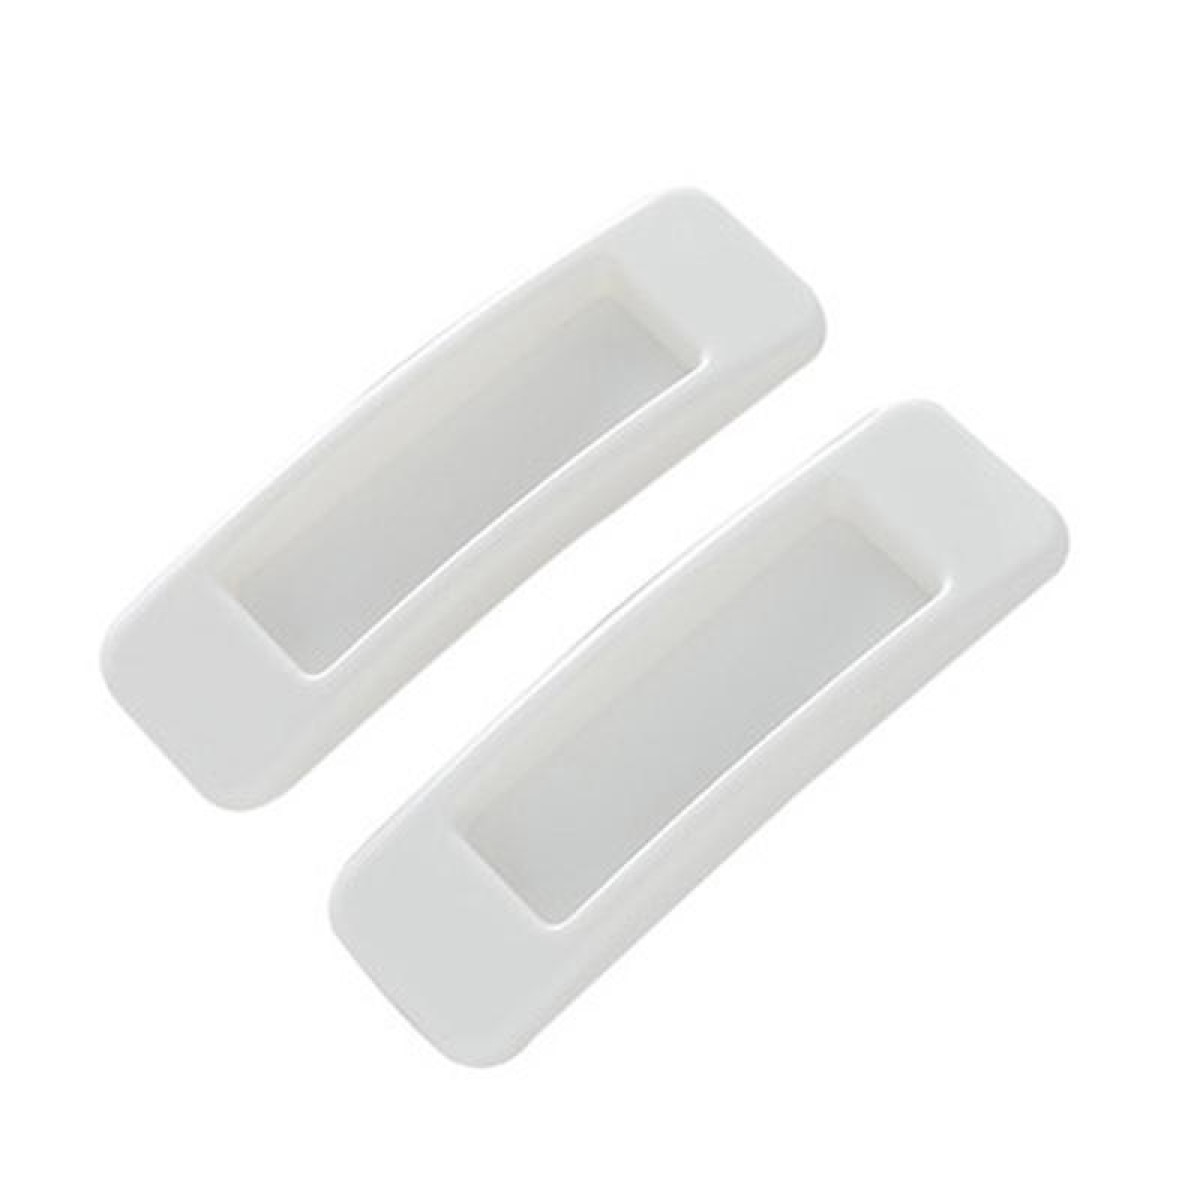 1pair Rectangular Paste Assist Door Windows Handle Refrigerator Cabinet Door Handle(White)